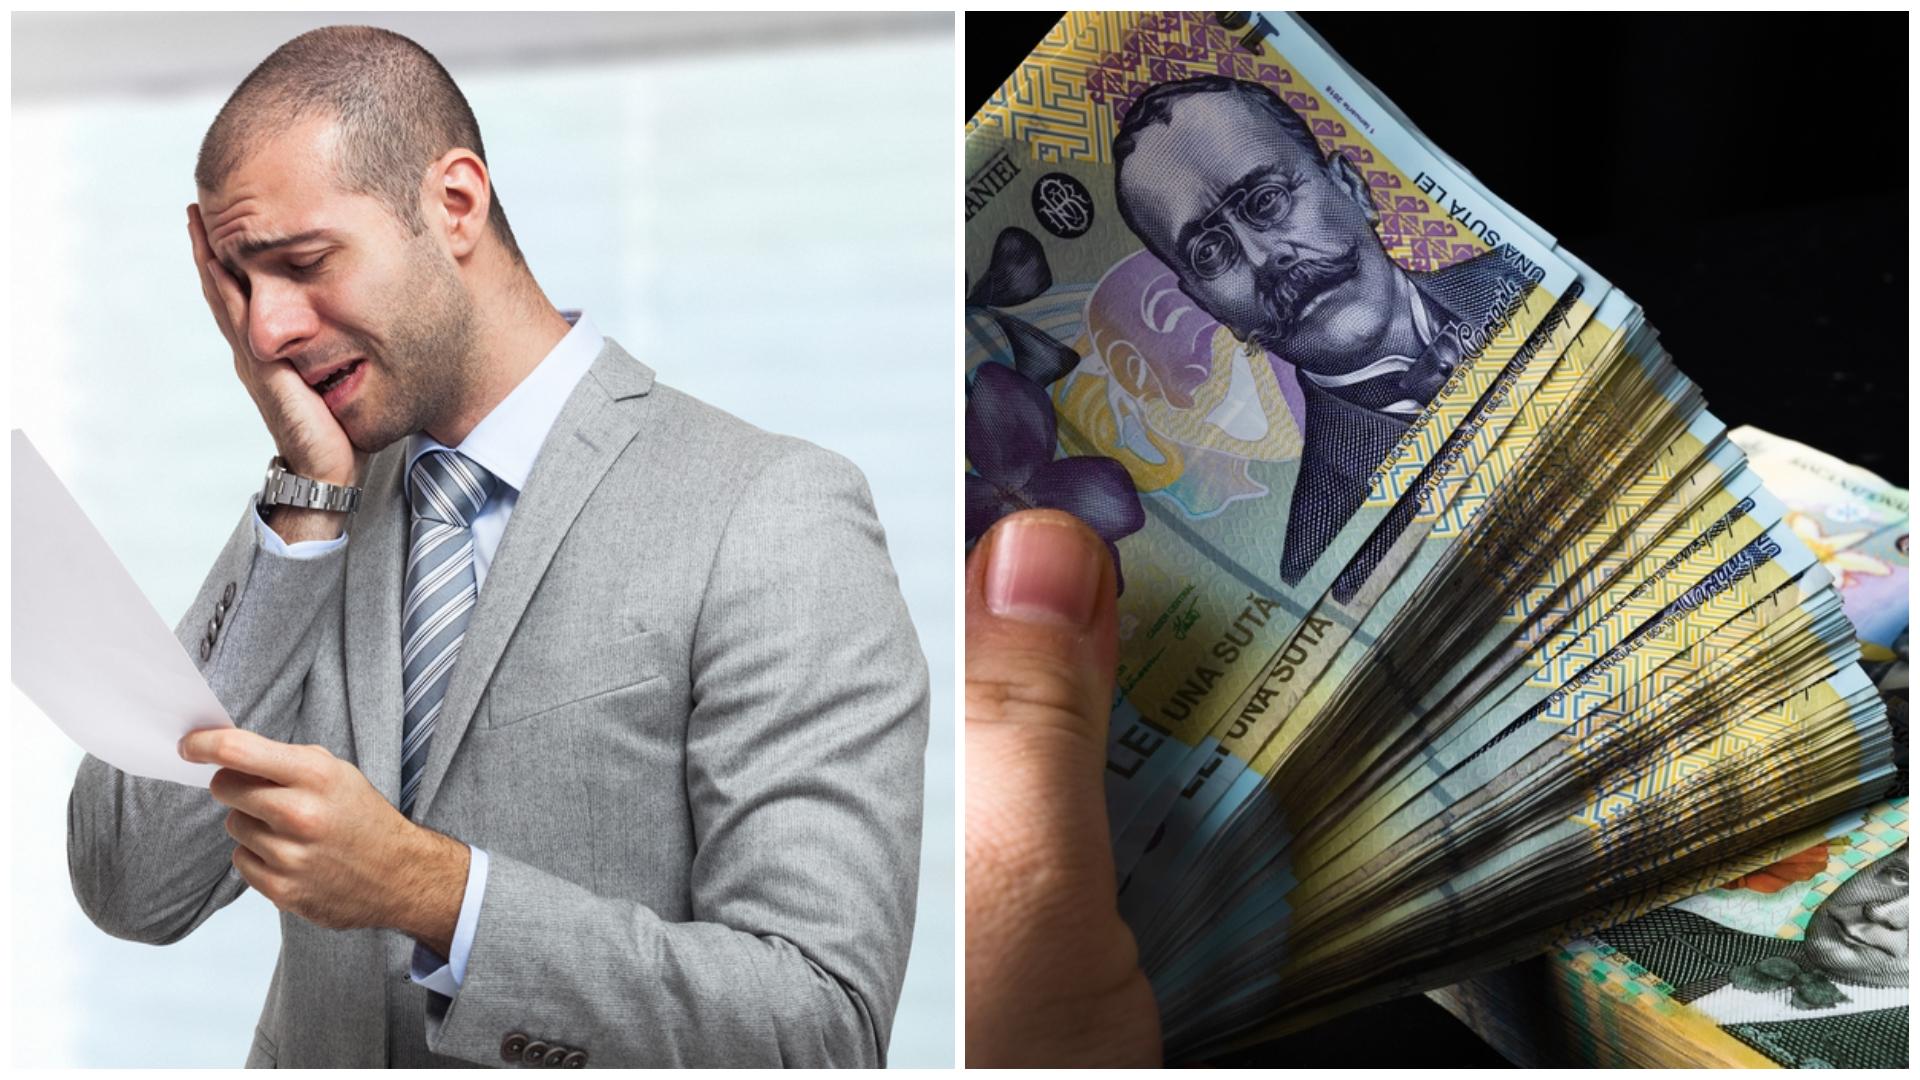 Colaj cu un bărbat care își ține mâna în cap și multe bancnote românești